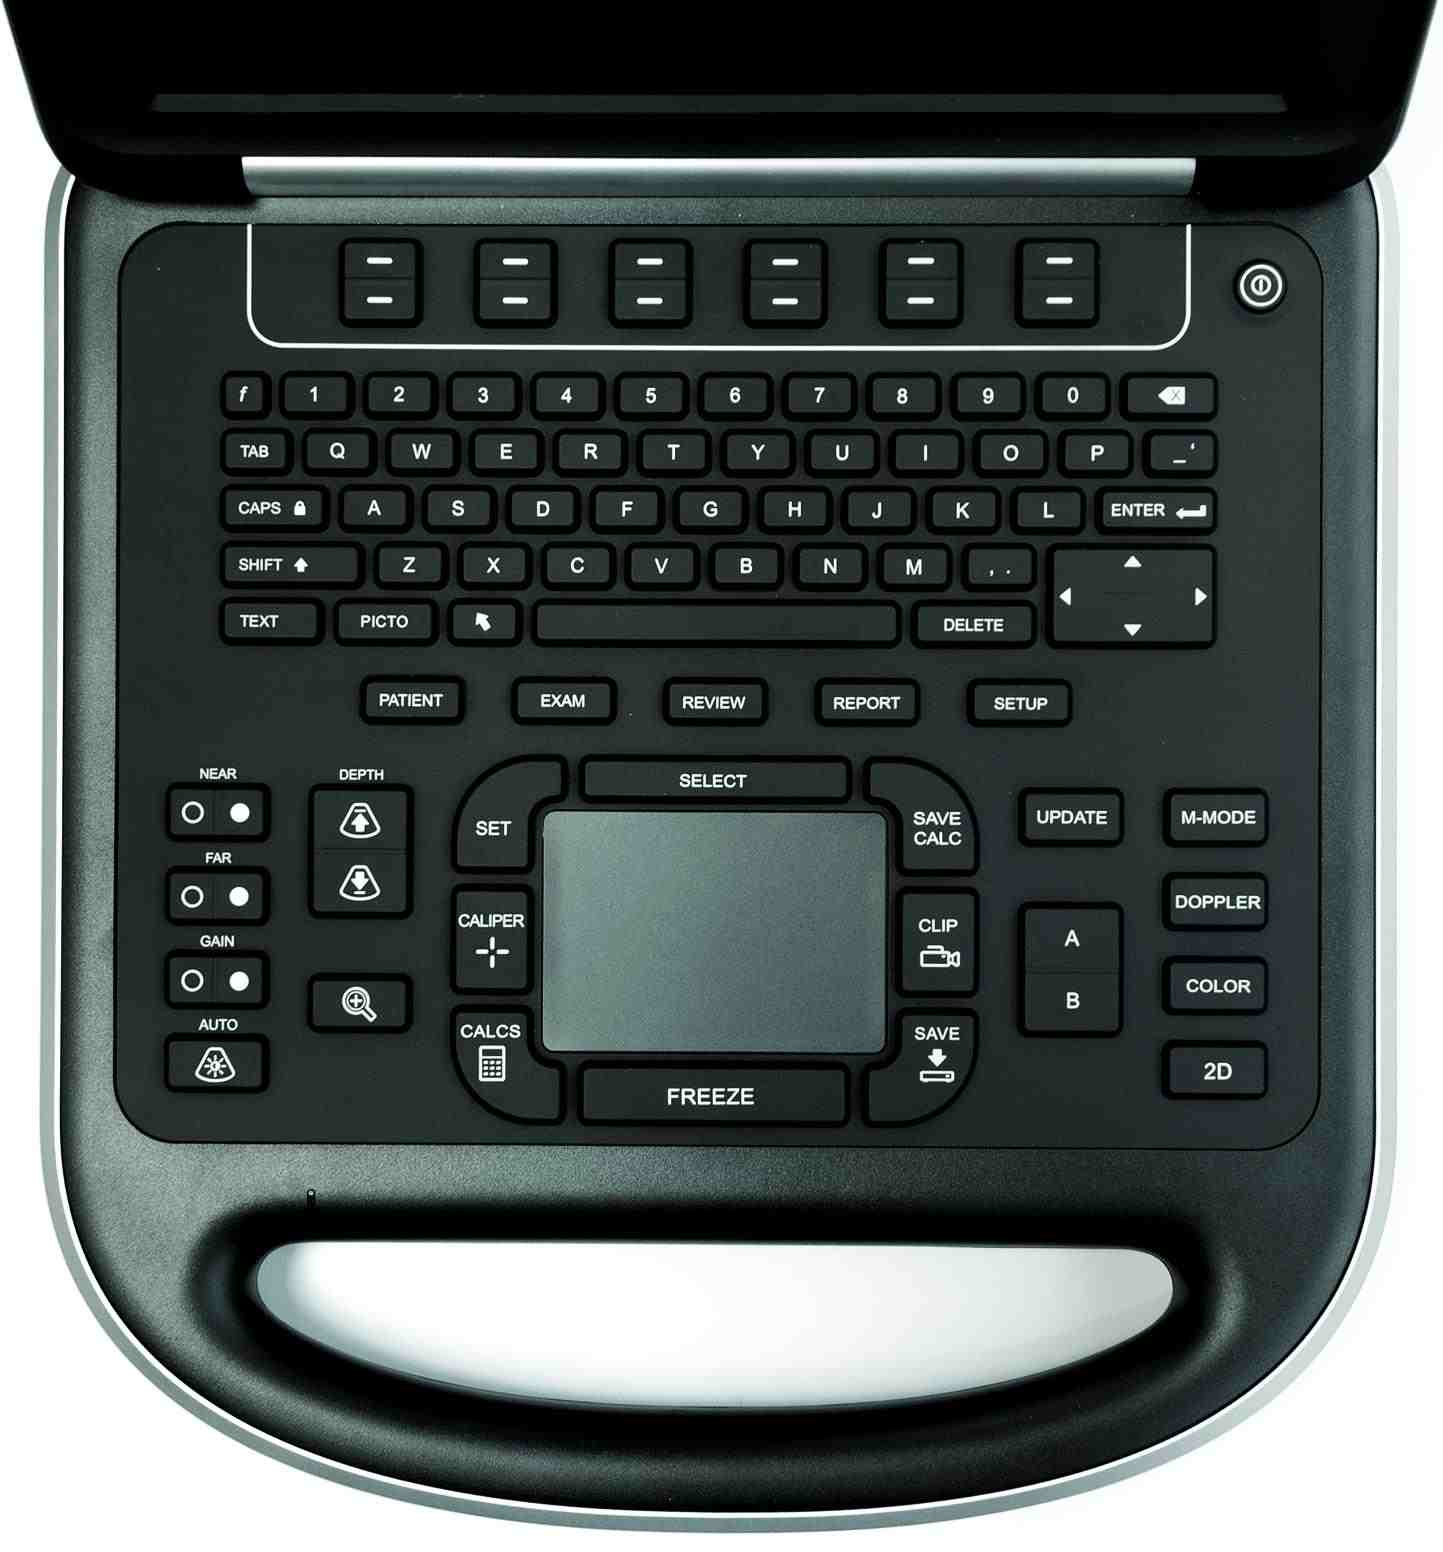 Ultrasonografy mobilne przyłóżkowe SonoSite Edge II